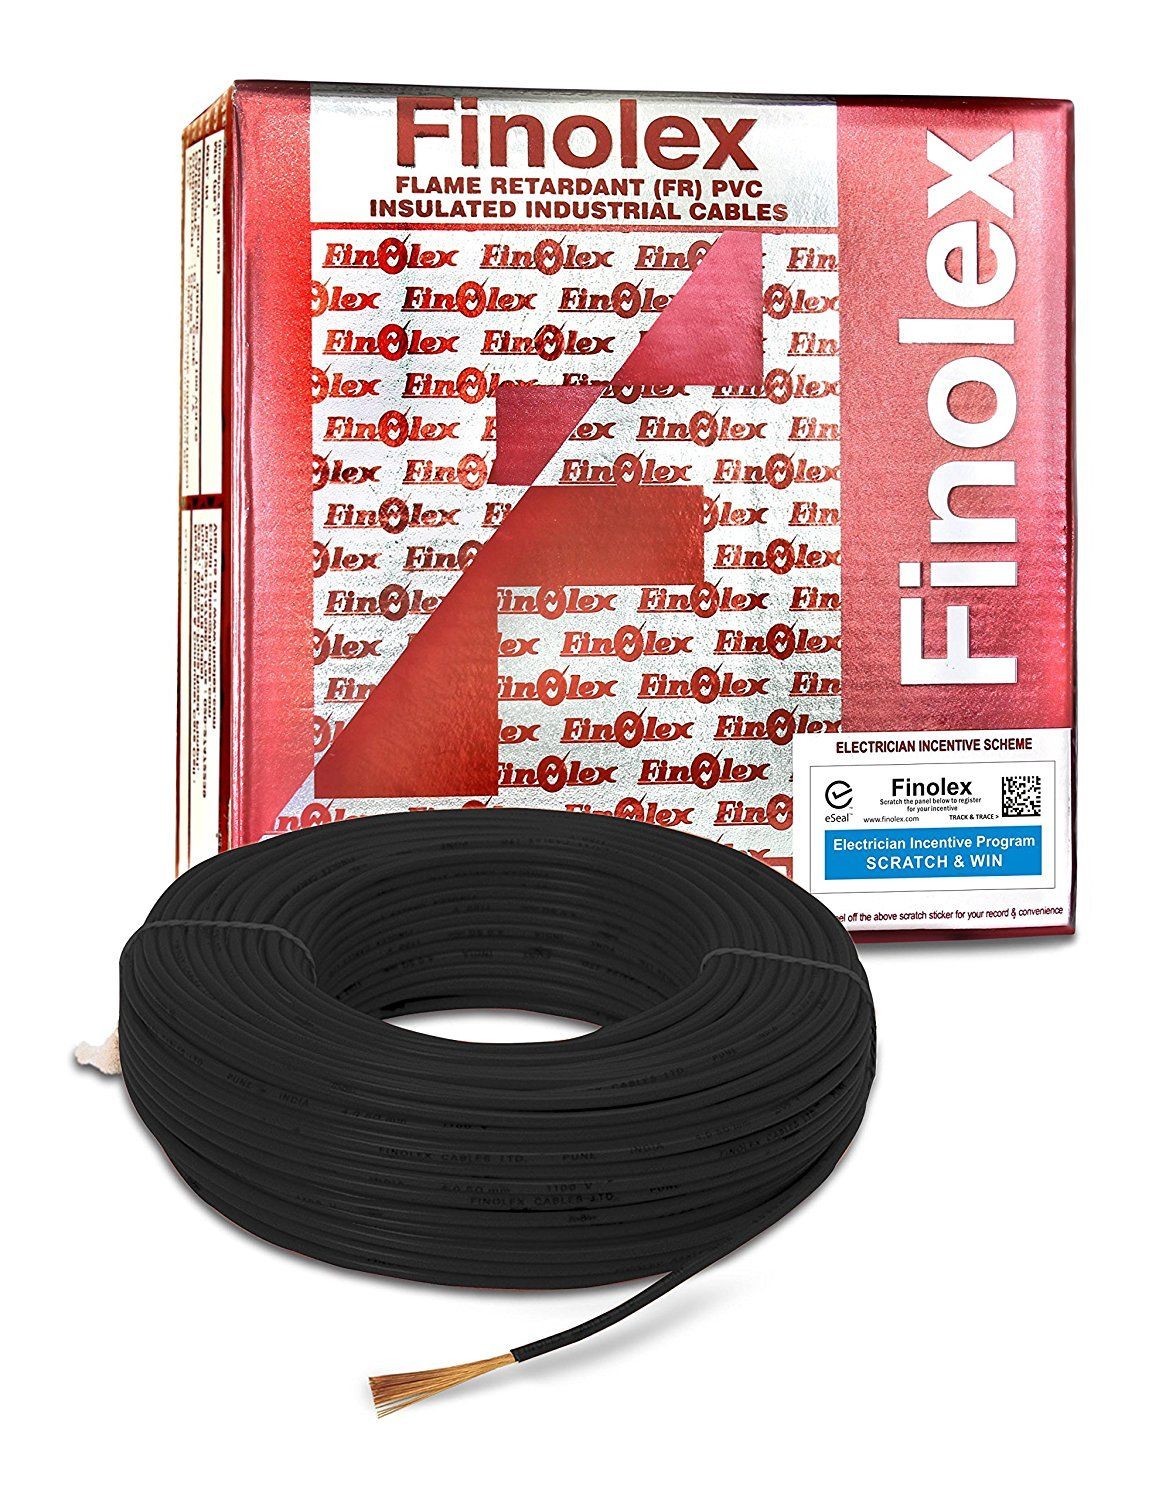 Finolex wires